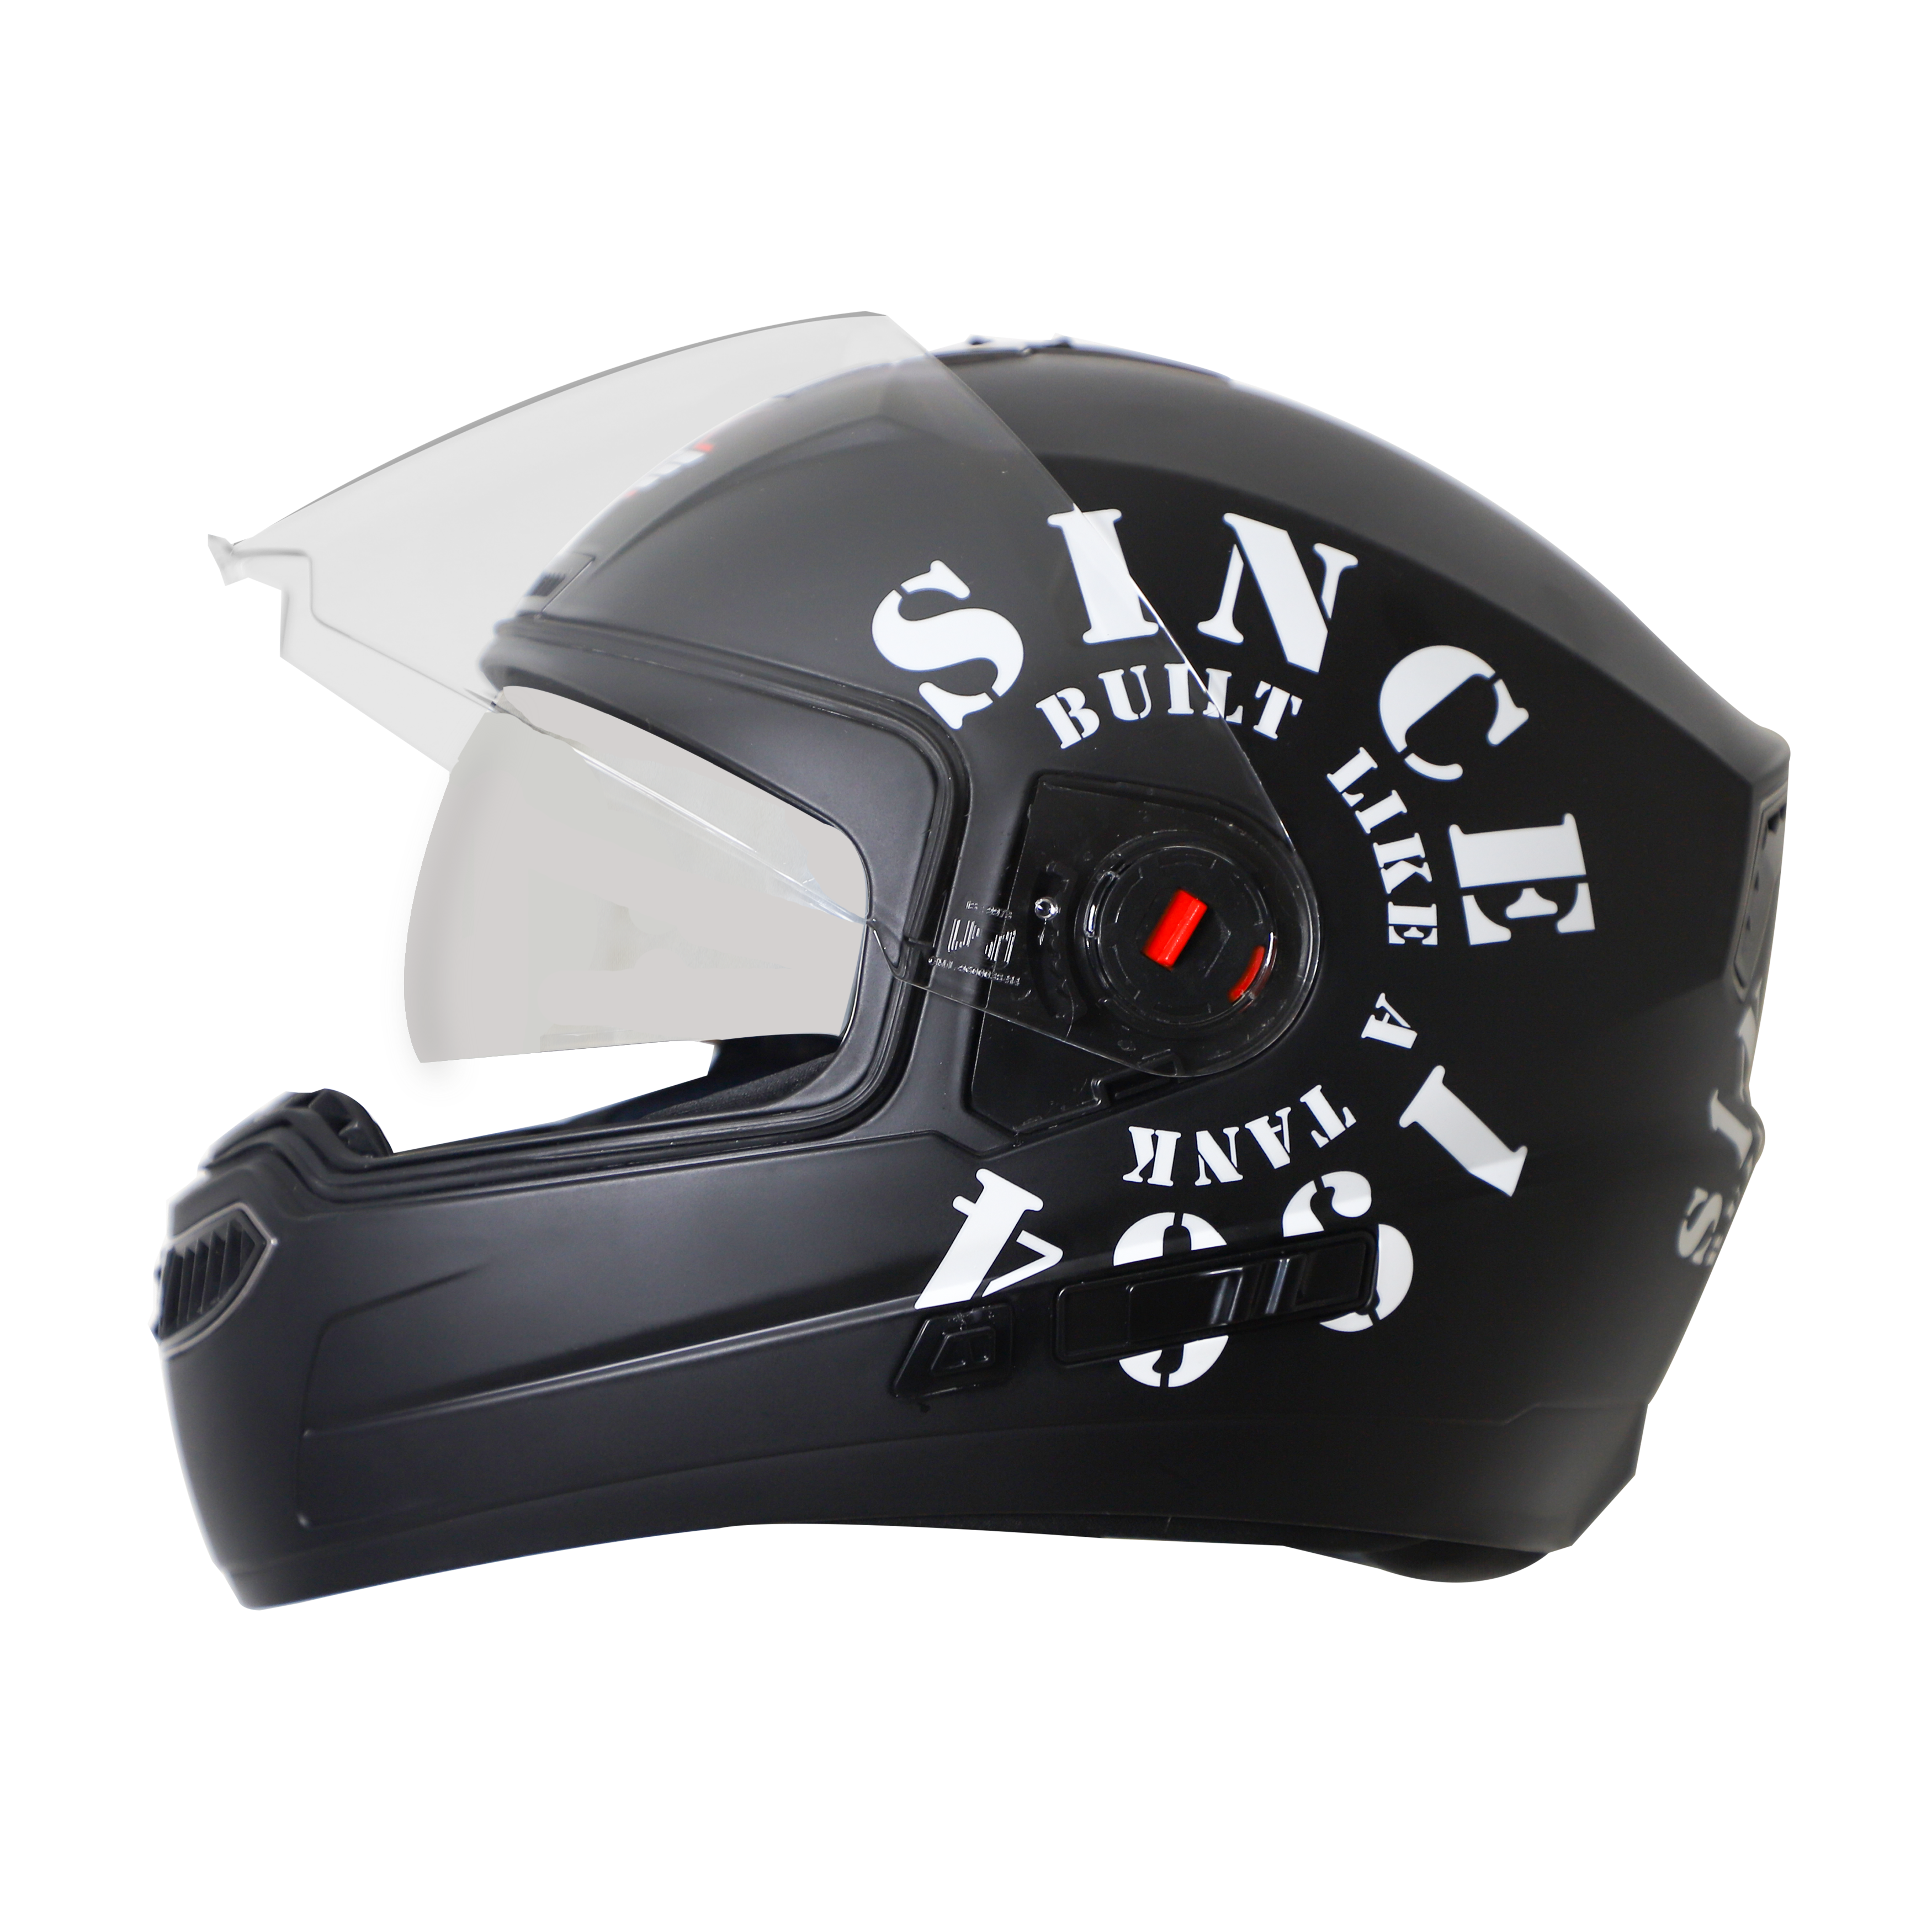 Steelbird SBA-1 Tank Double Visor Full Face Graphics Helmet, Inner Silver Sun Shield And Outer Clear Visor (Matt Black White)